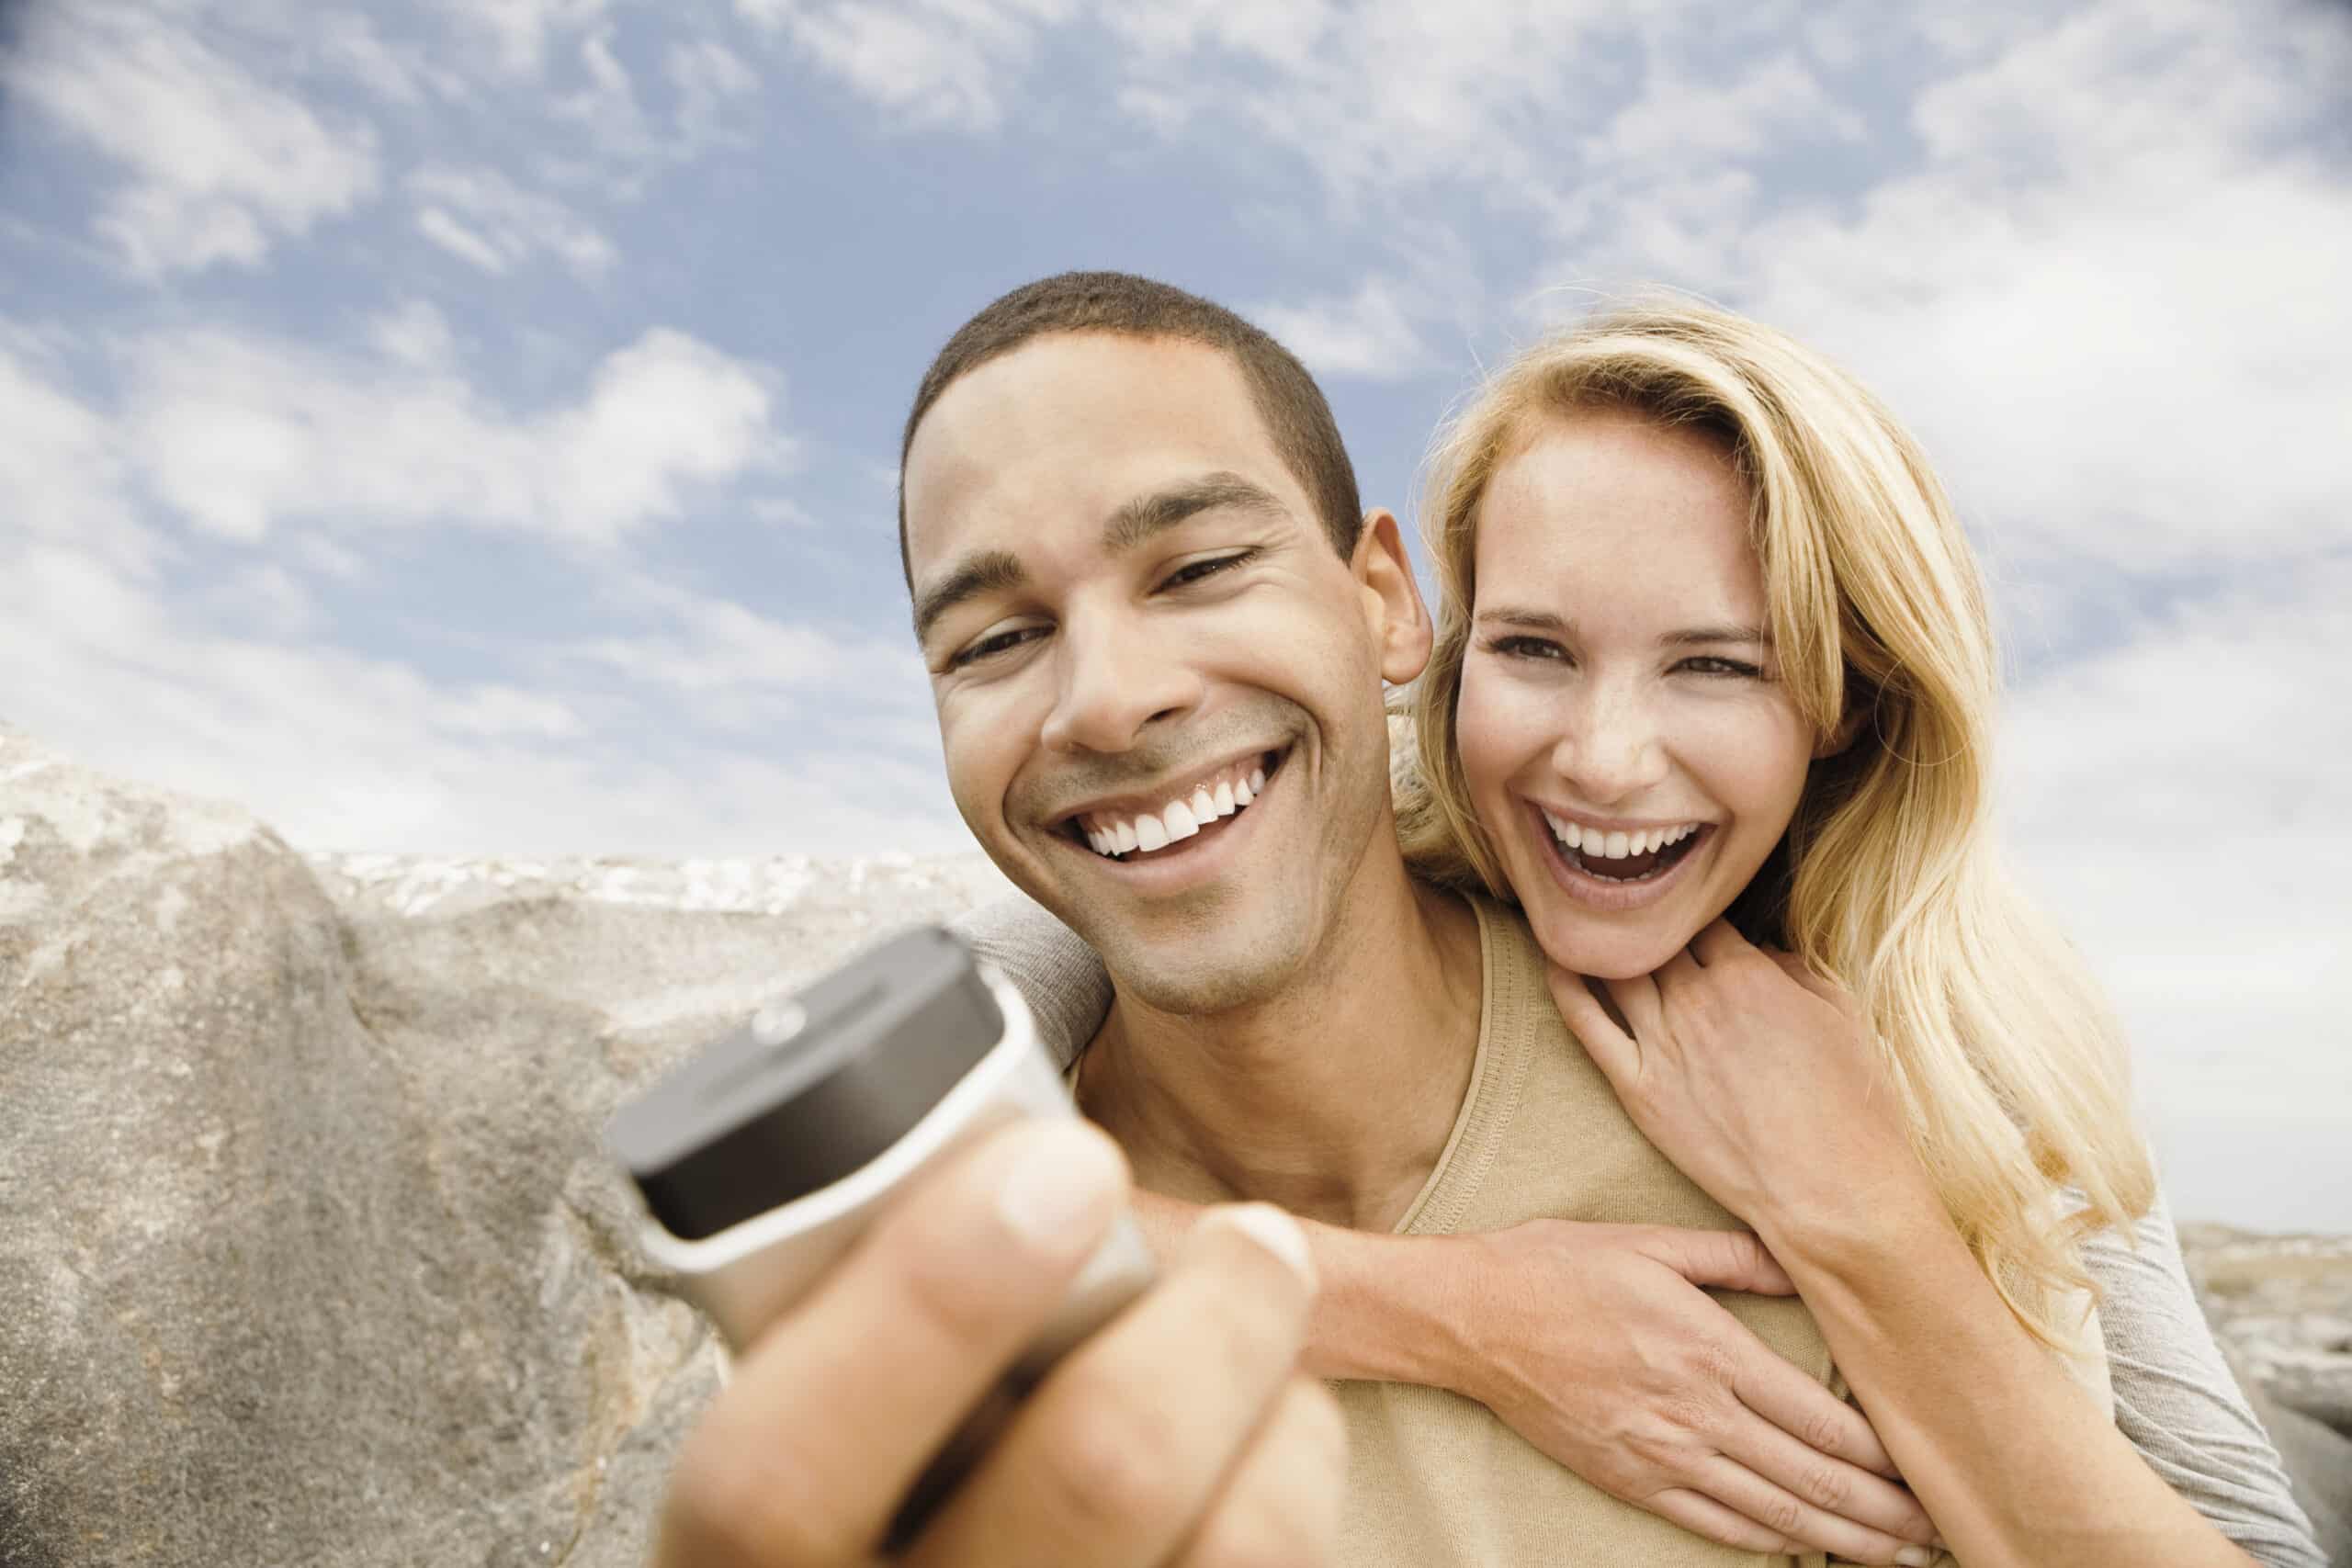 Ein fröhliches Paar macht im Freien ein Selfie. Der Mann hält die Kamera und beide lächeln breit vor dem Hintergrund eines bewölkten Himmels und eines felsigen Geländes. © Fotografie Tomas Rodriguez